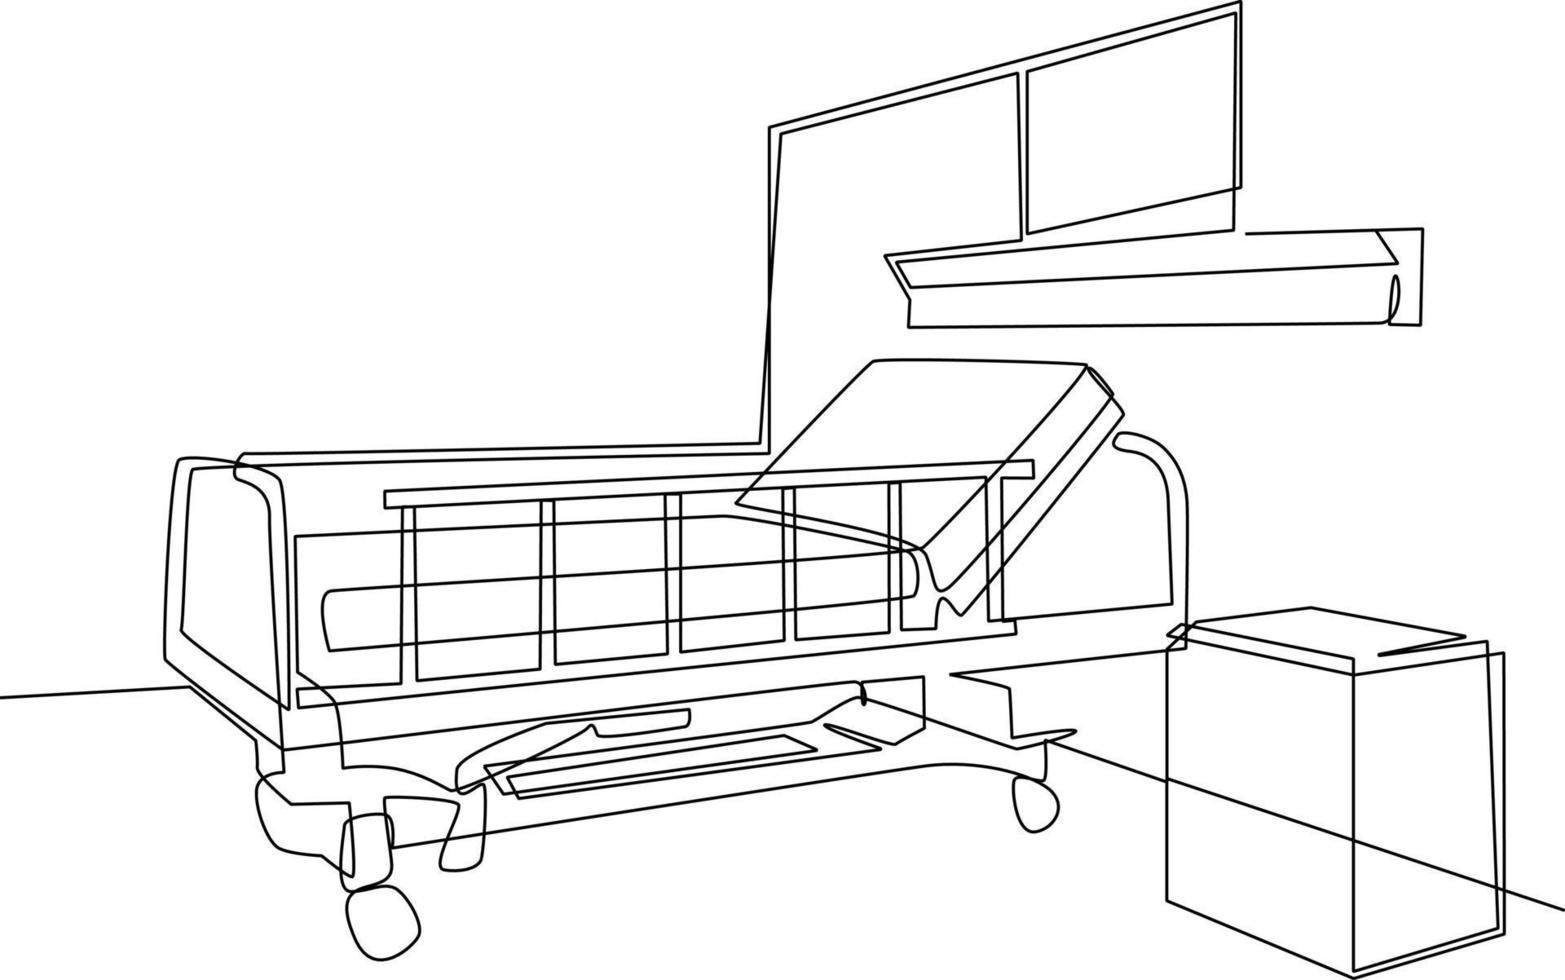 single een lijn tekening ziekenhuis kamer interieur met bed en kliniek apparatuur. een leeg ziekenhuis kamer concept. doorlopend lijn trek ontwerp grafisch vector illustratie.